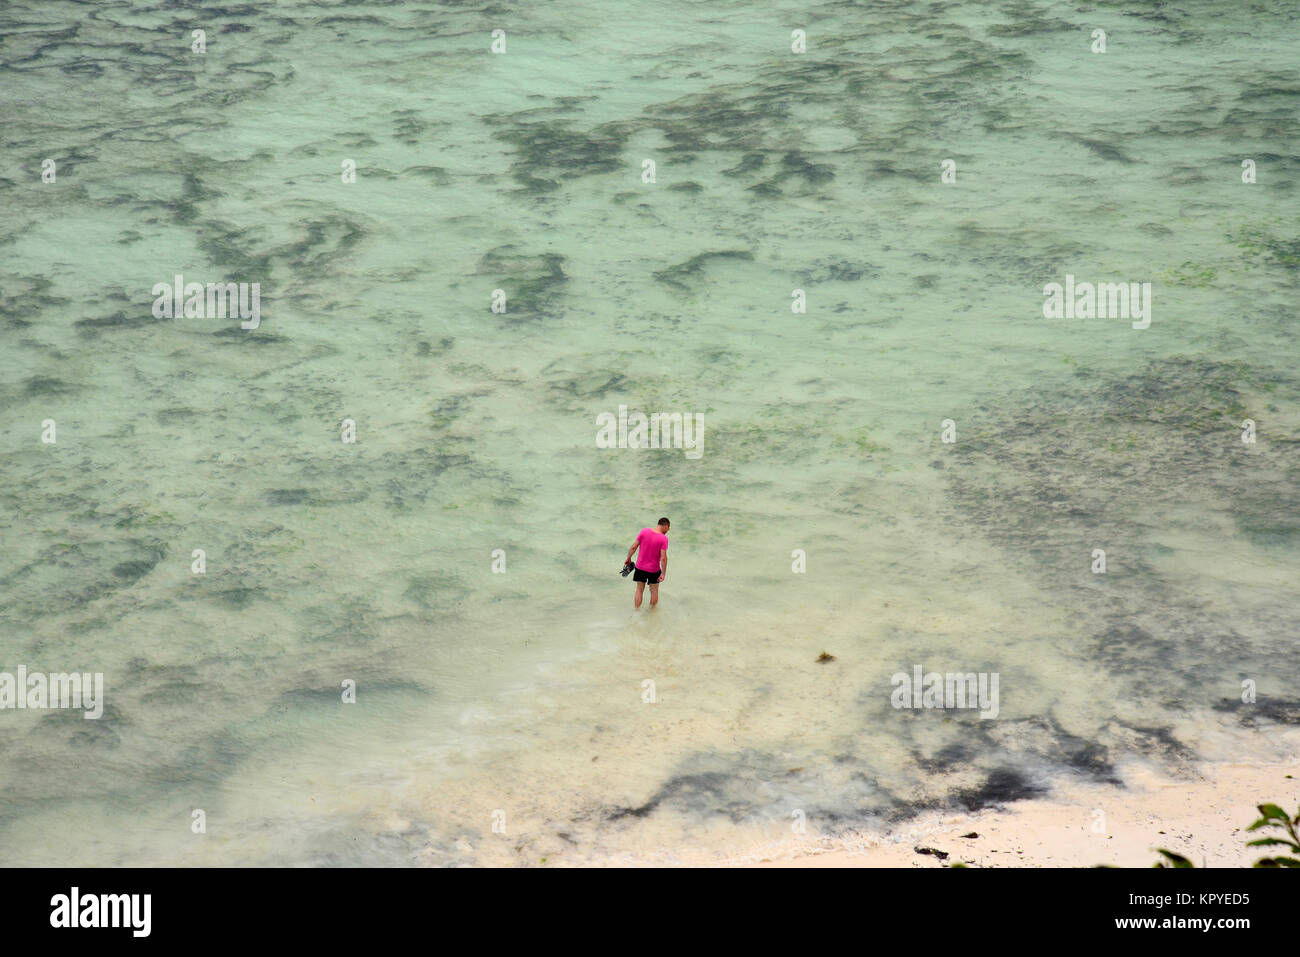 Zanzibar est un paradis de l'océan Indien que la plupart des gens peuvent se permettre de visiter pour paresseux vacances sur les plages chaudes. Man wading in mer, vue aérienne. Banque D'Images